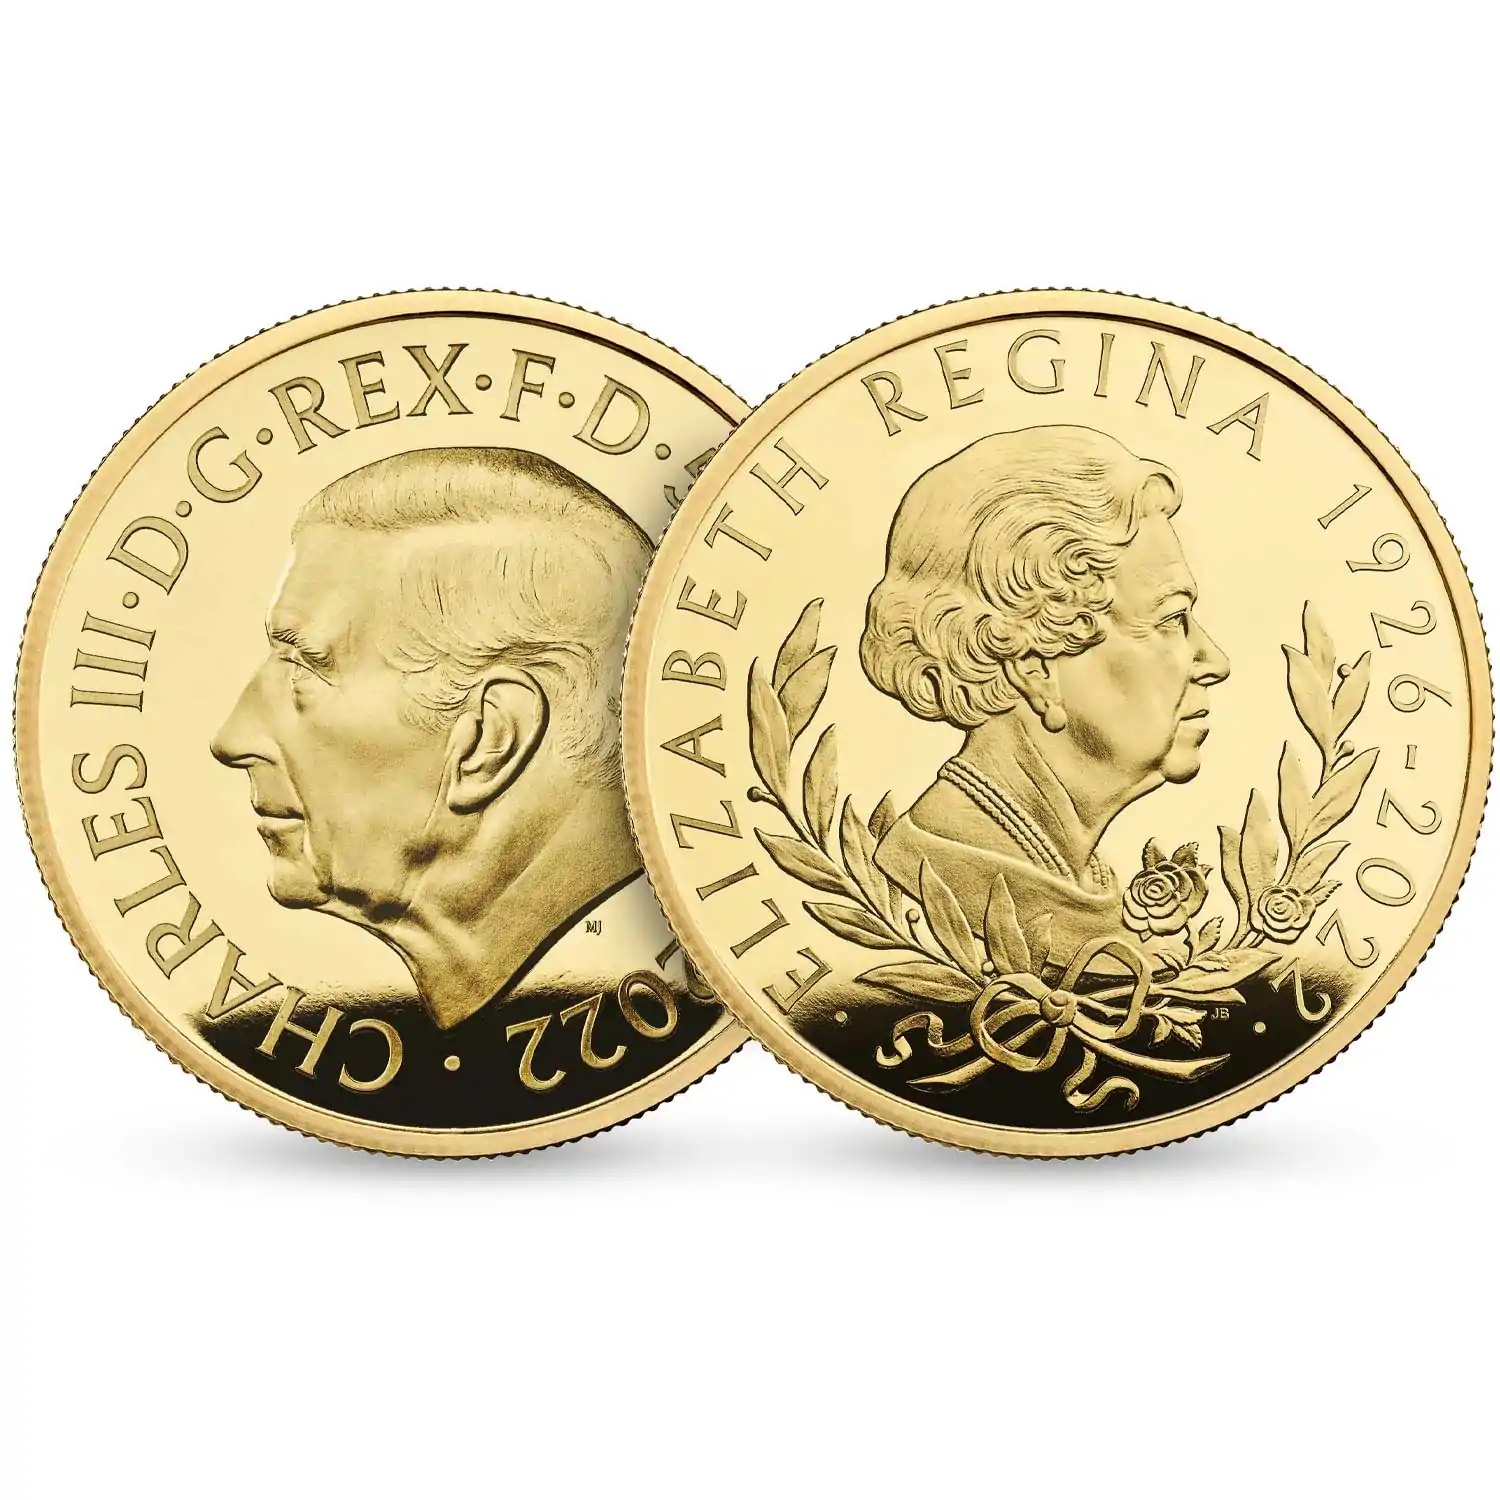 Her Majesty Queen Elizabeth II 2022 1/4 uncji Proof  - złota moneta